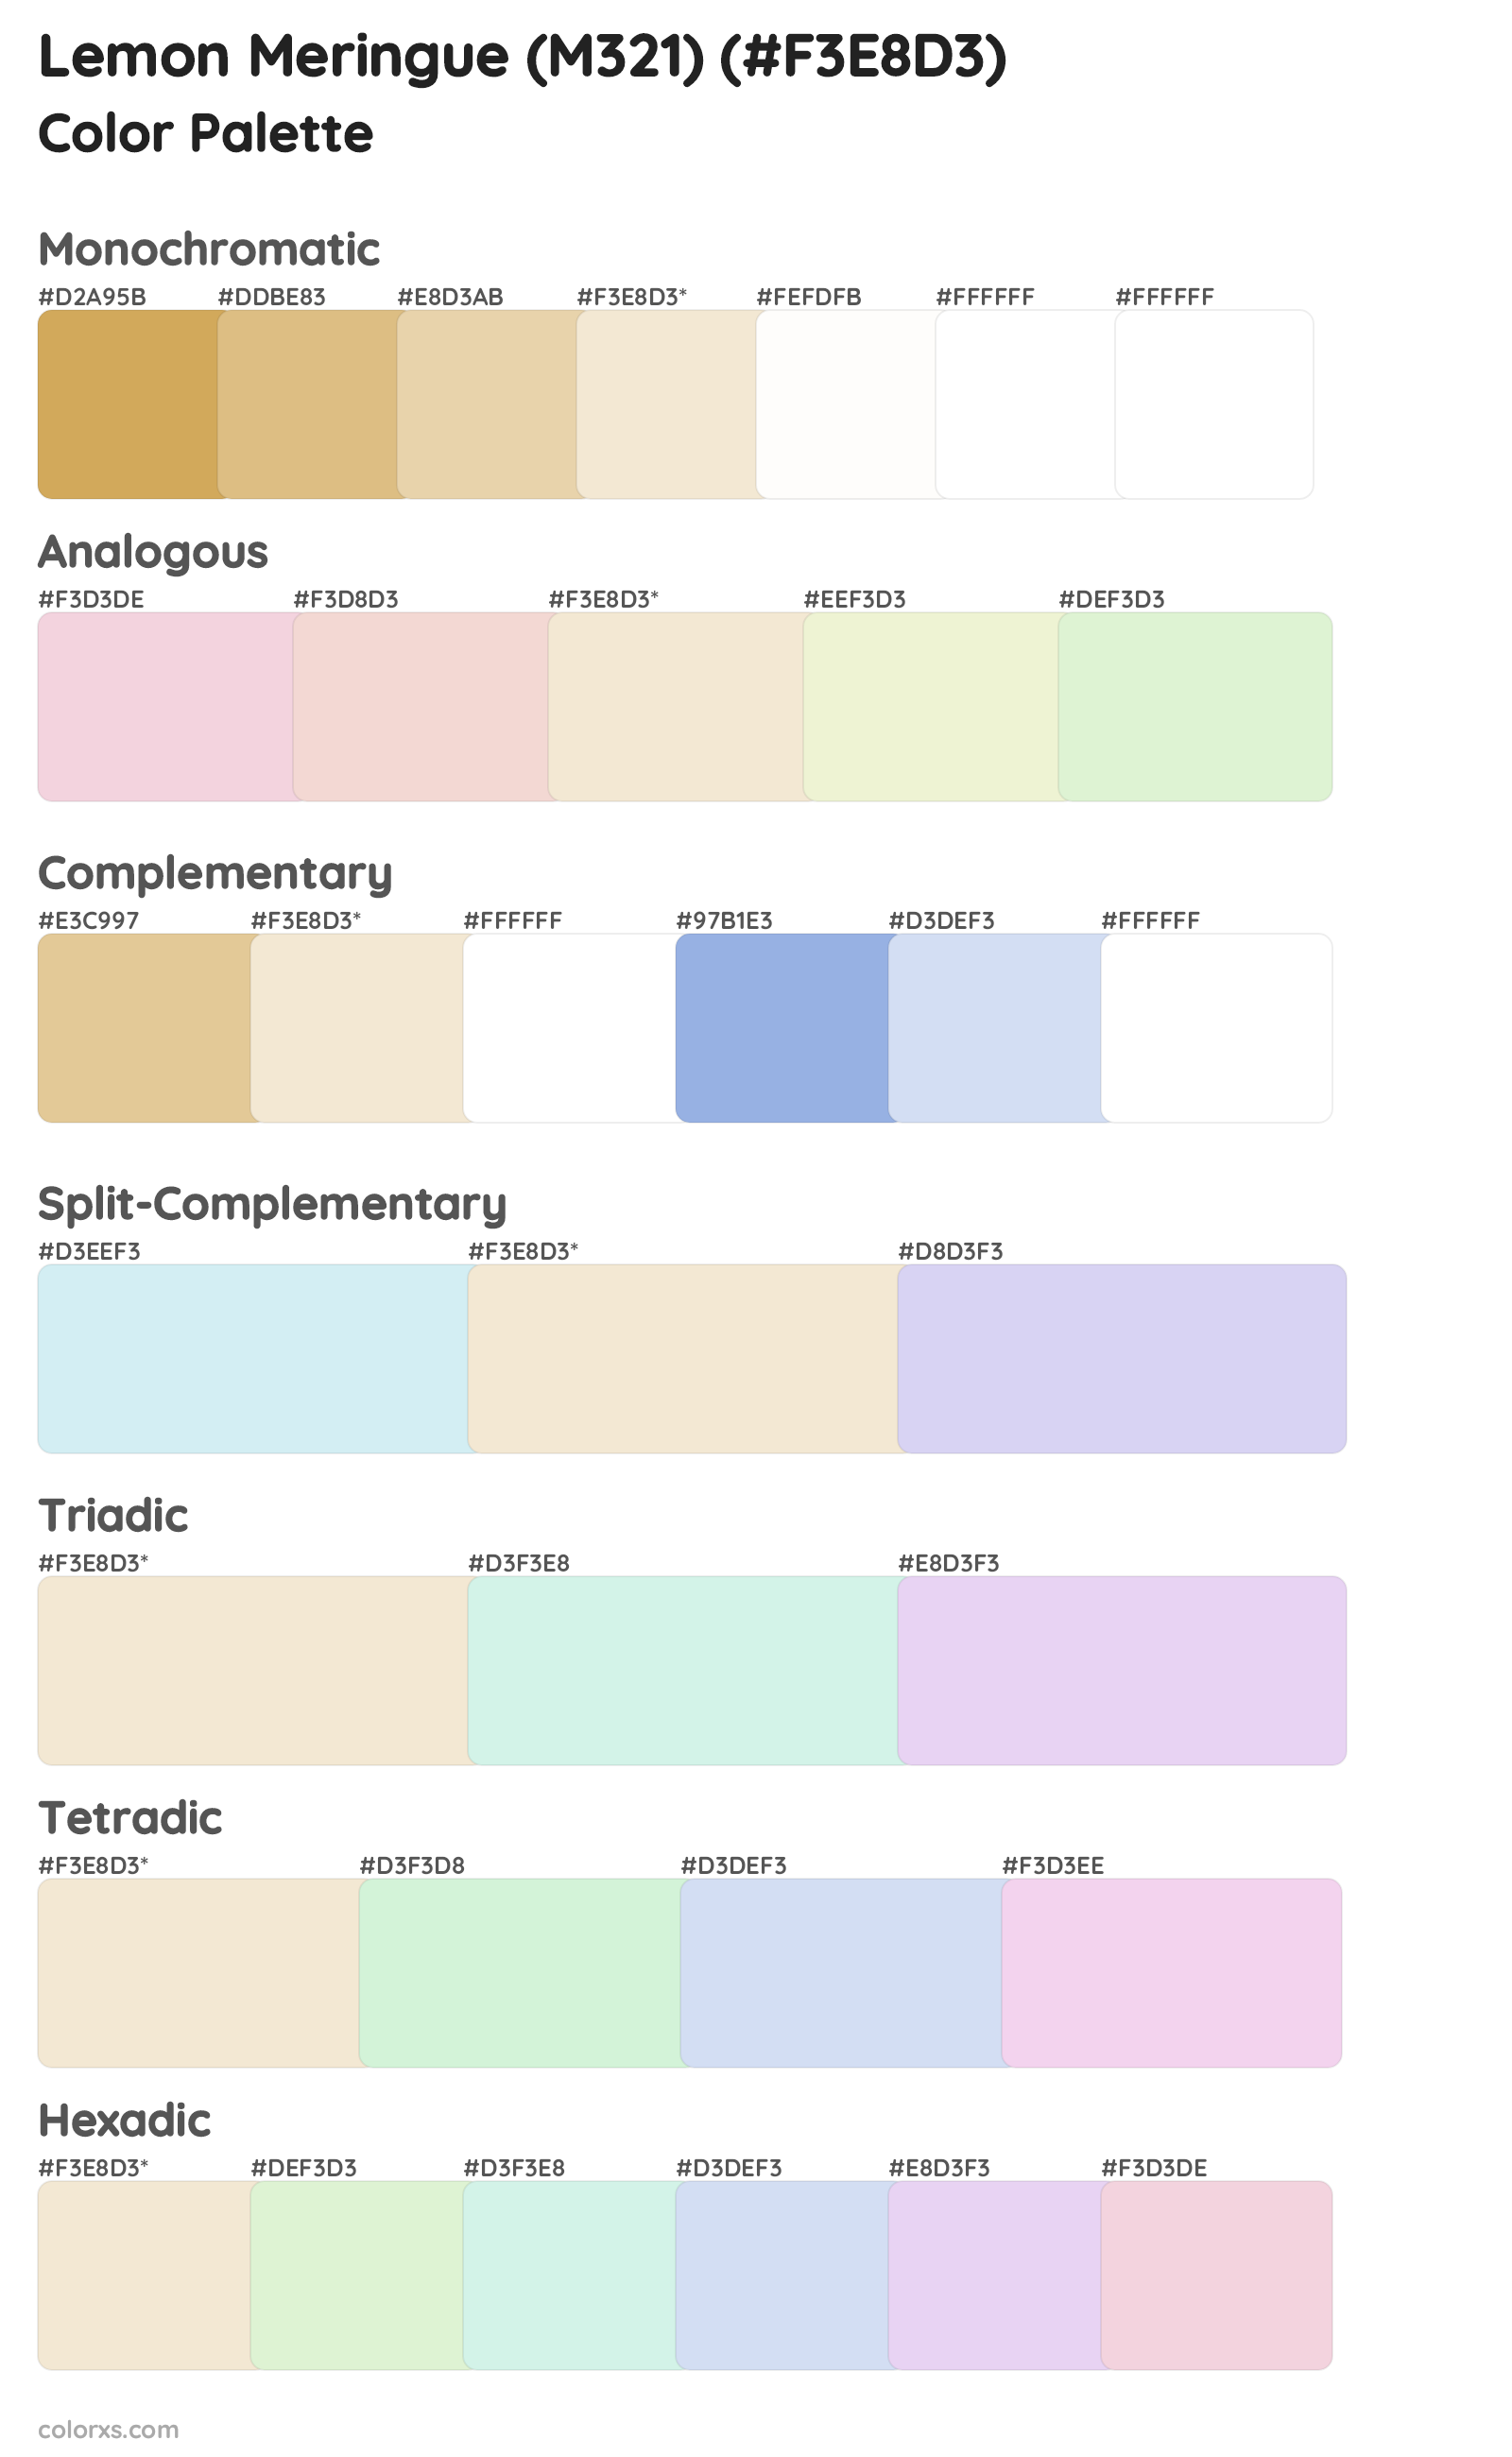 Lemon Meringue (M321) Color Scheme Palettes